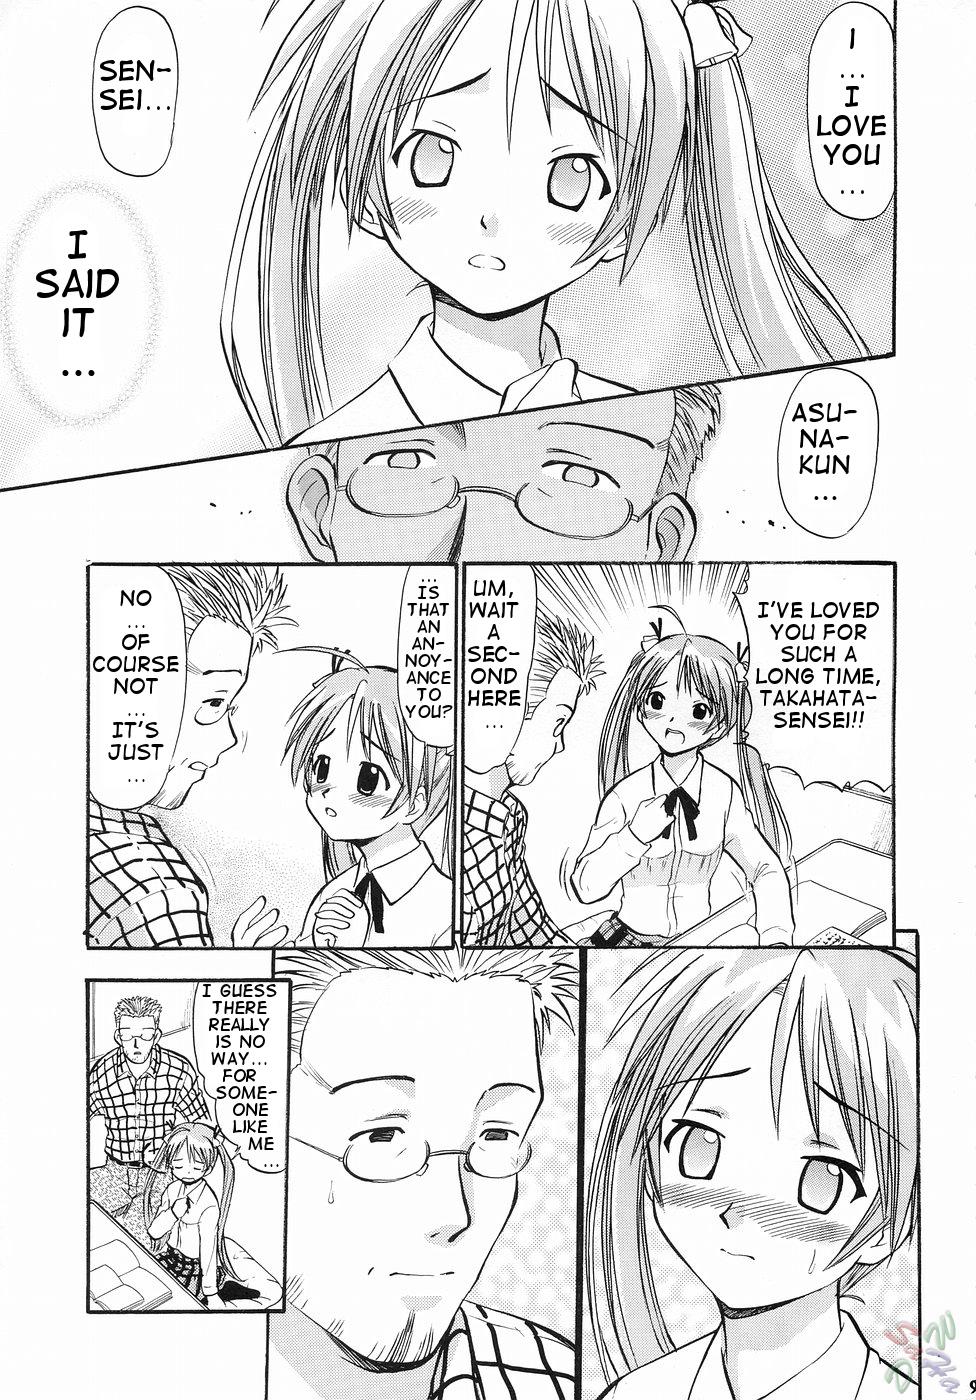 Sex Asuna no Koisuru Heart - Mahou sensei negima Bubble - Page 8